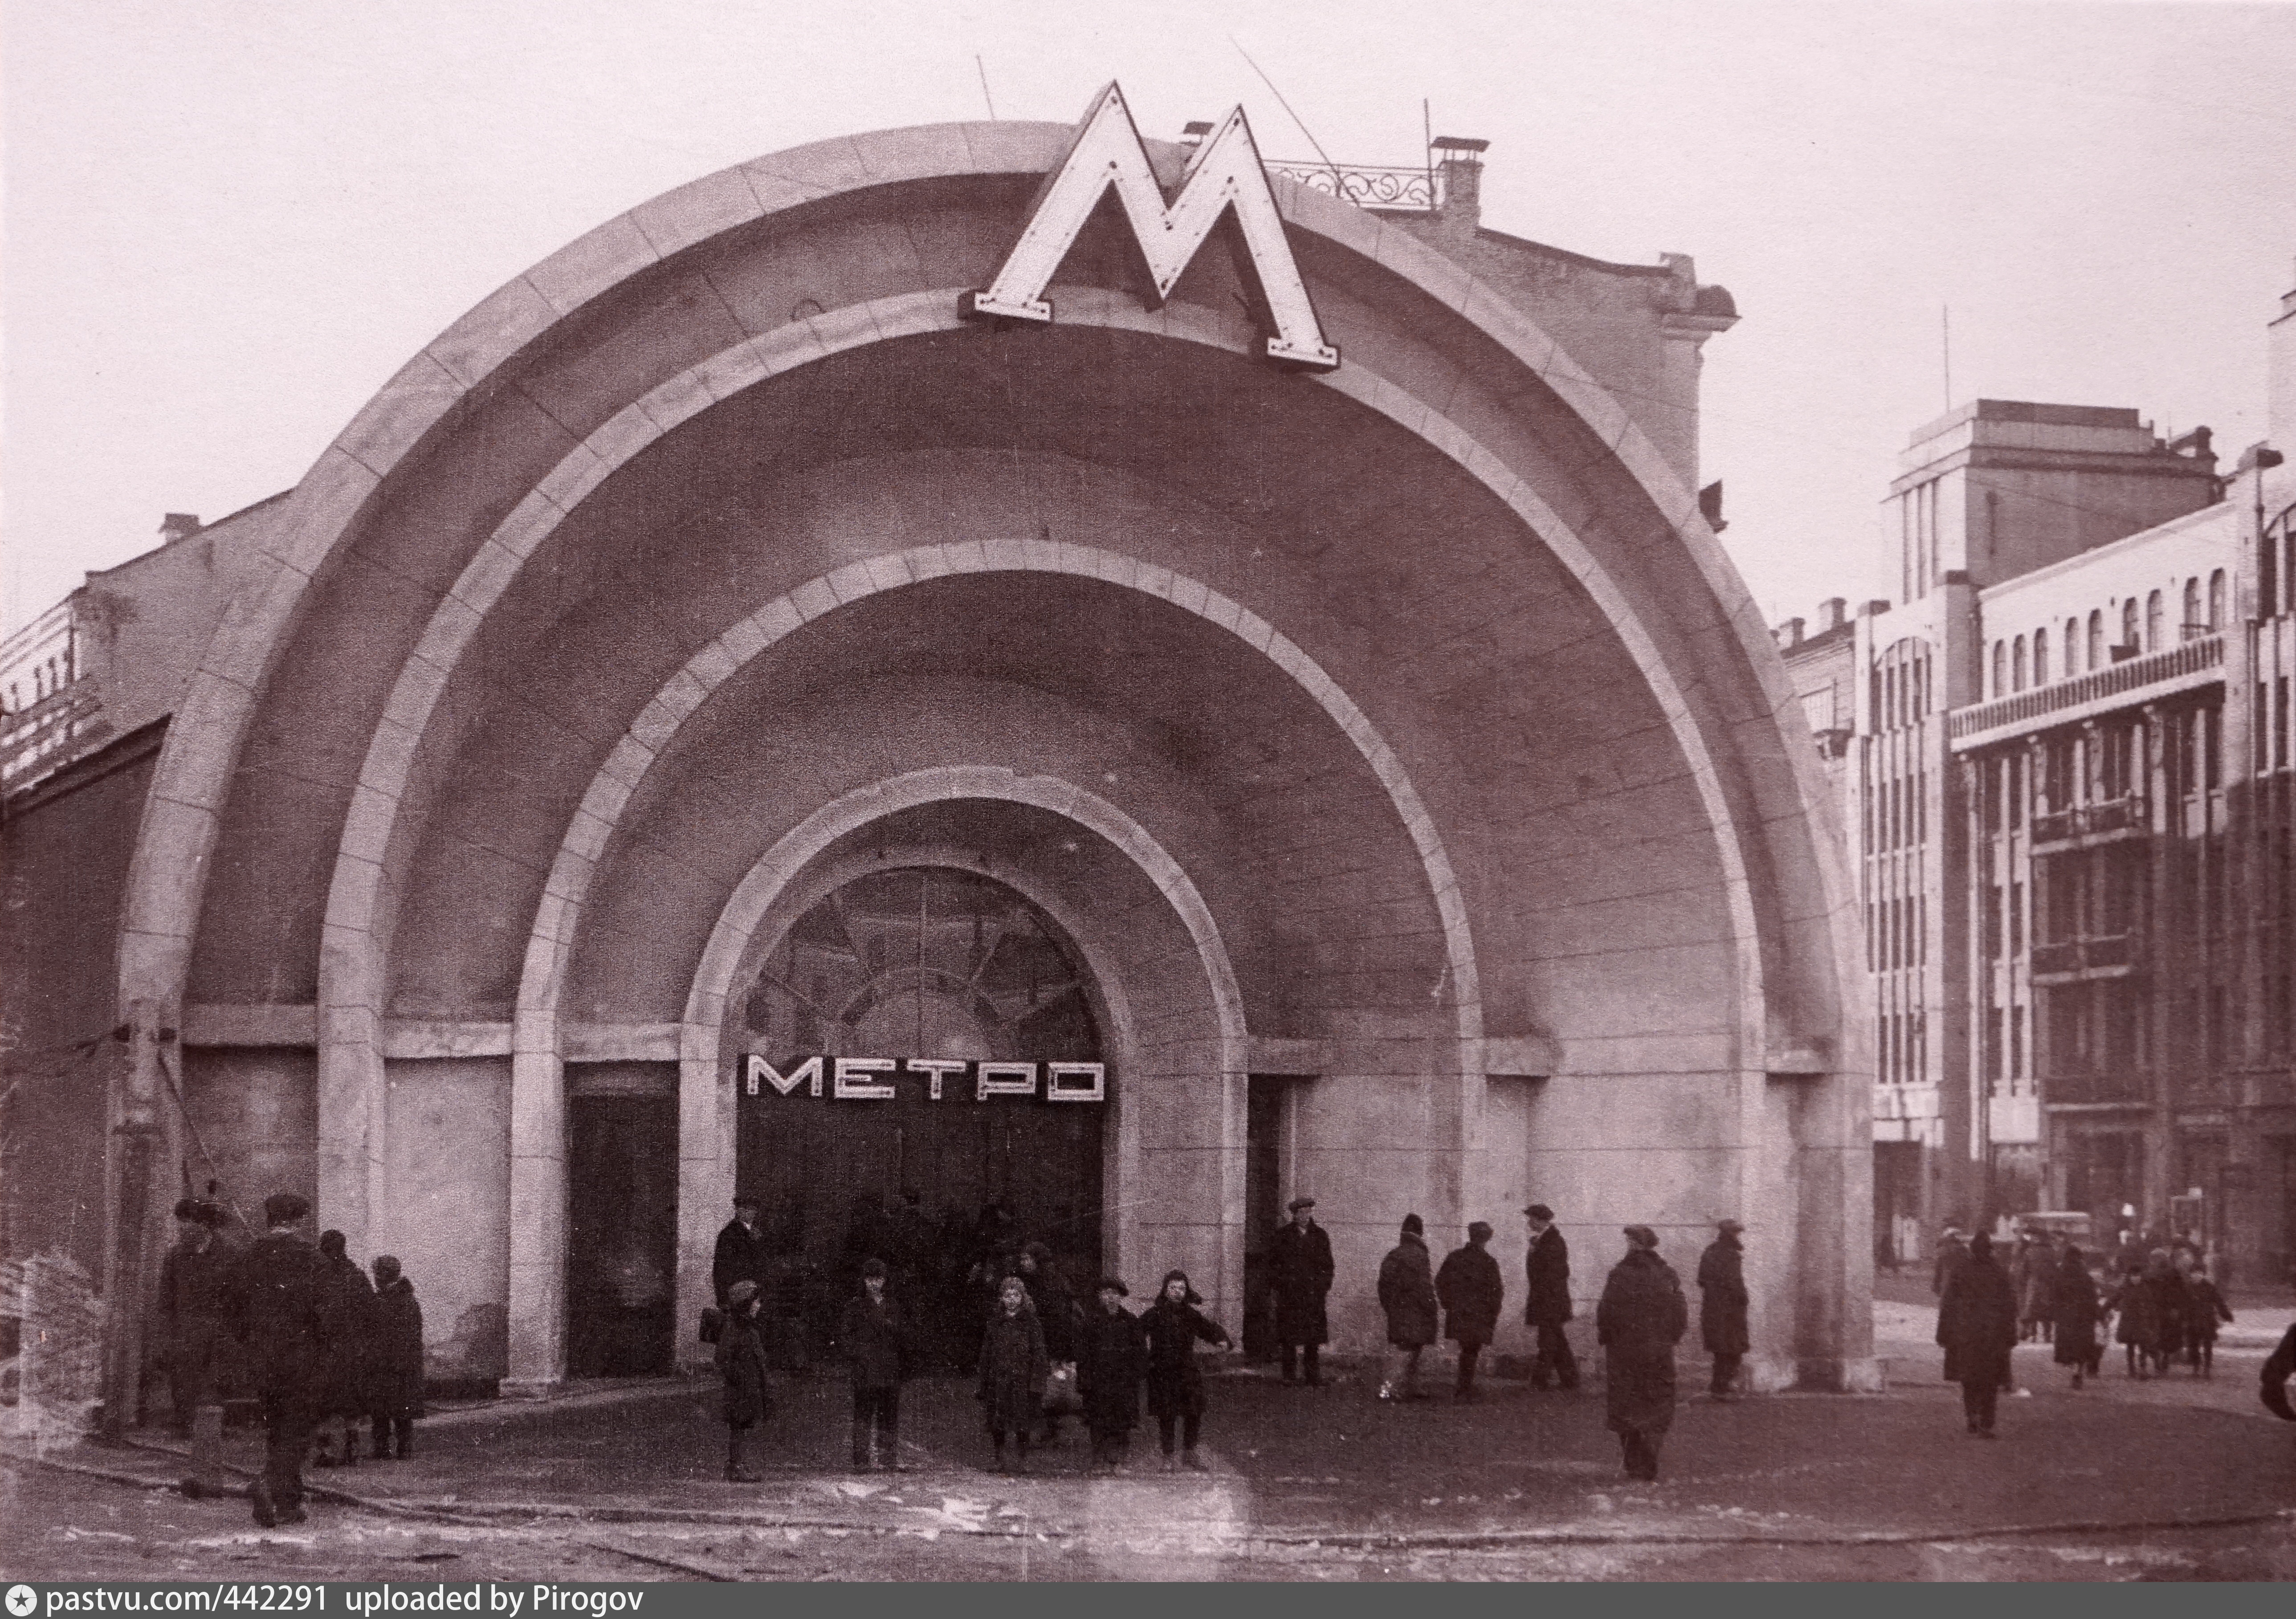 станция метро красные ворота фото внутри